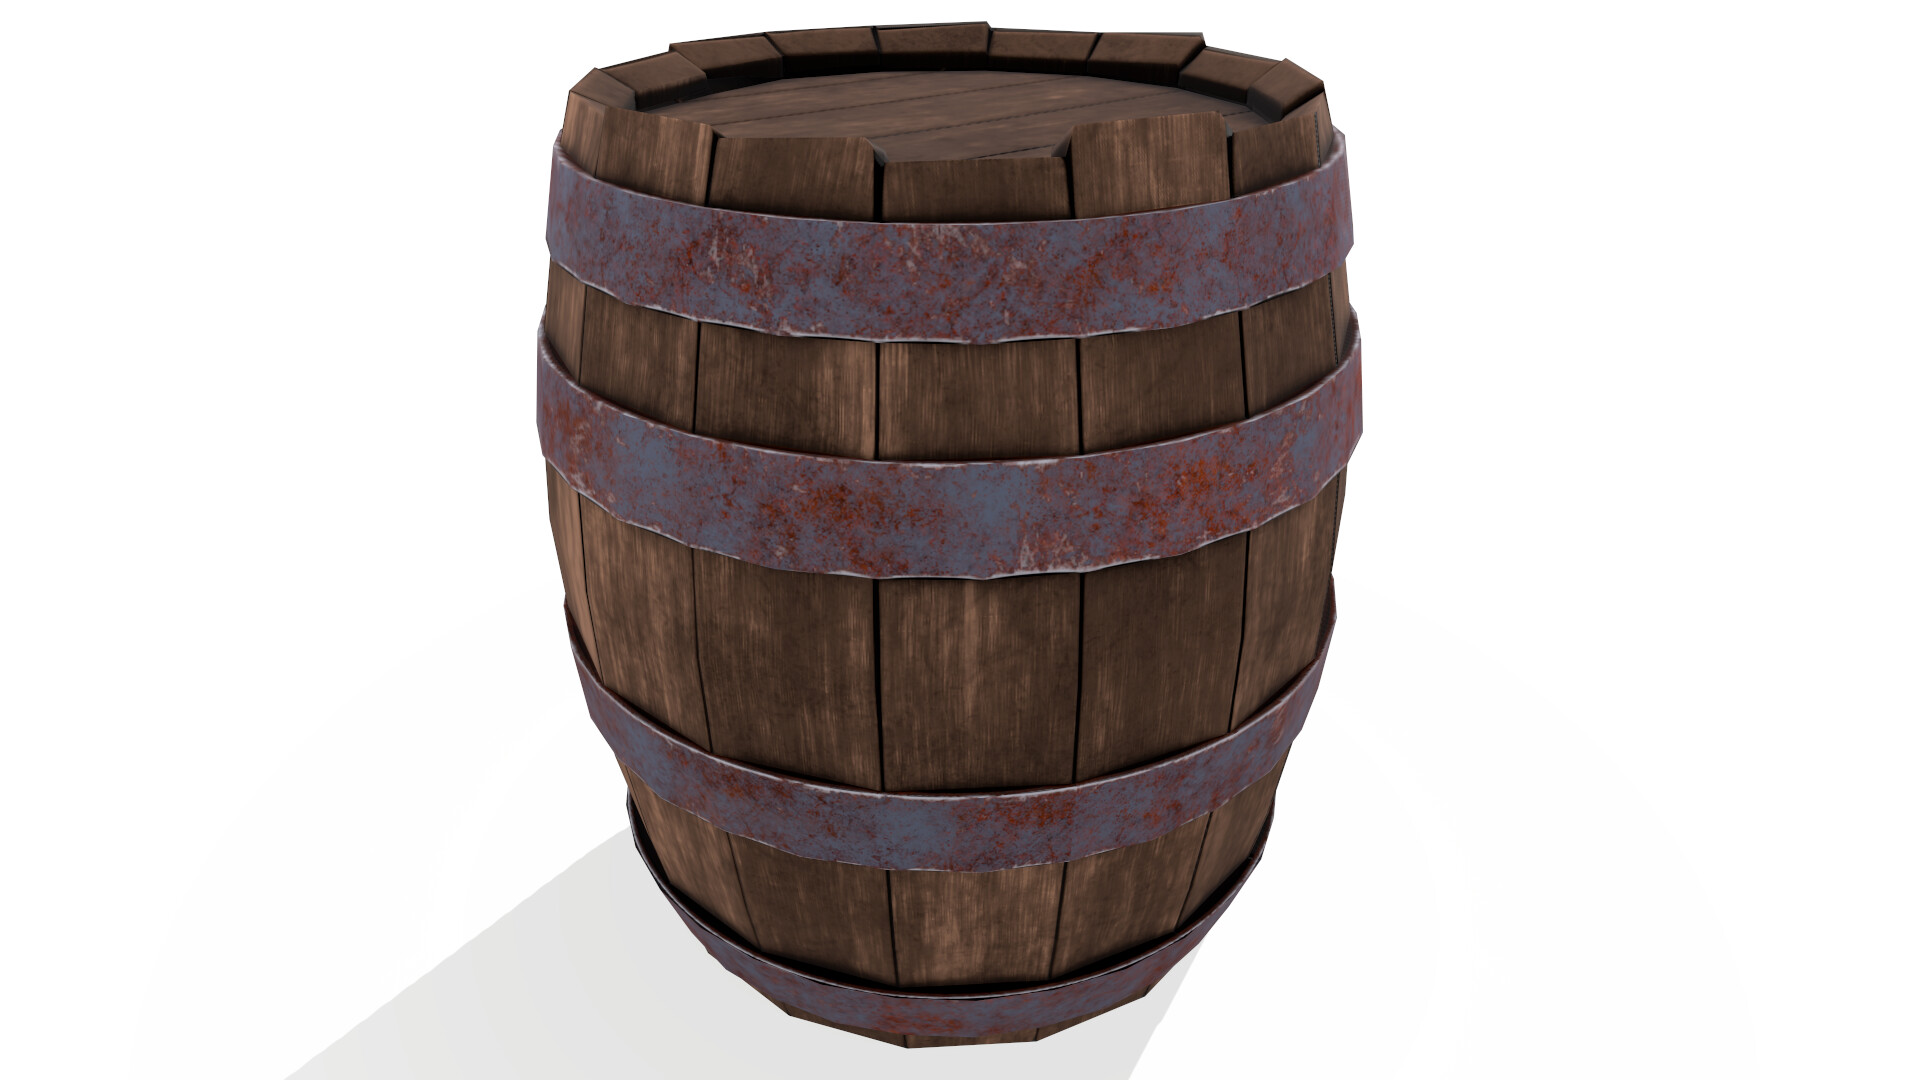 Instant barrel rust фото 31